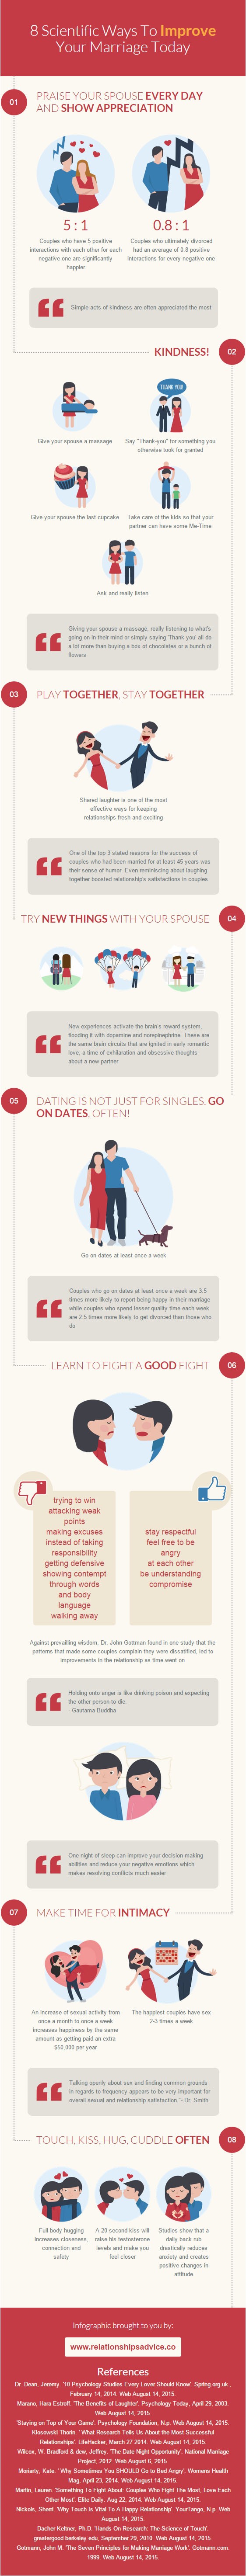 Quali sono i segreti di un matrimonio felice? (Infografica: relationsadvice.co)